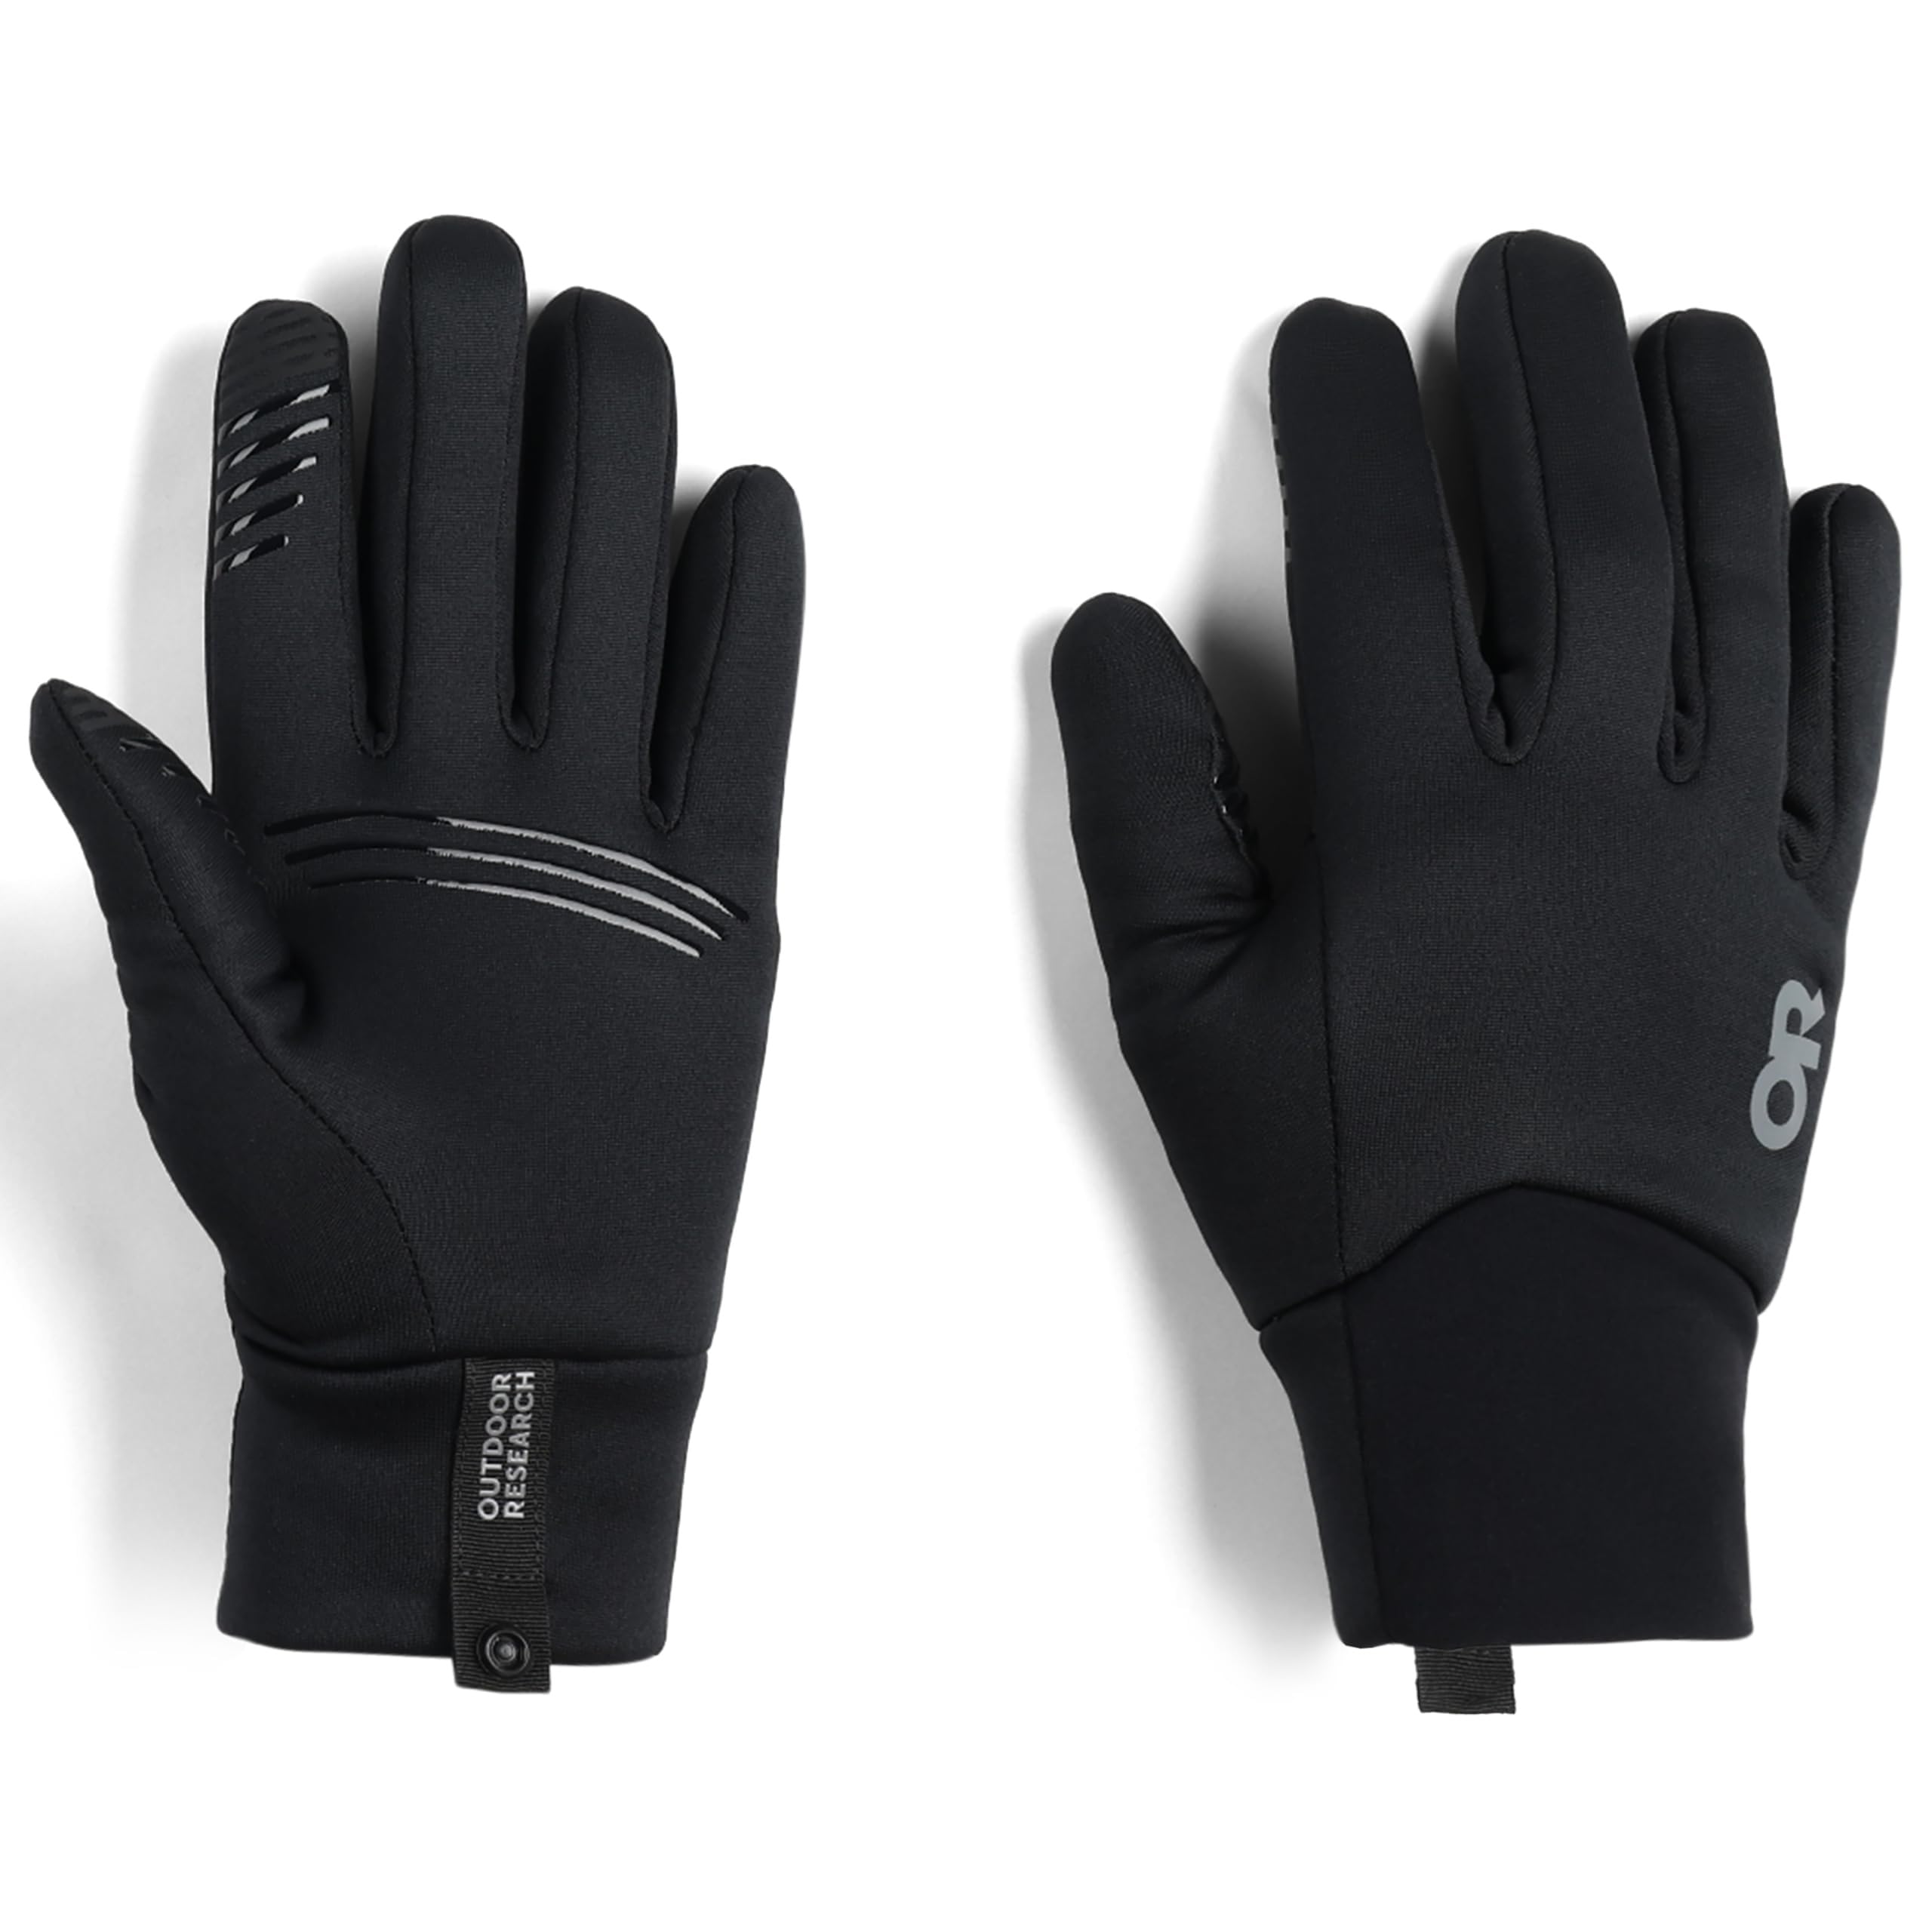 Сенсорные перчатки Vigor среднего веса Outdoor Research